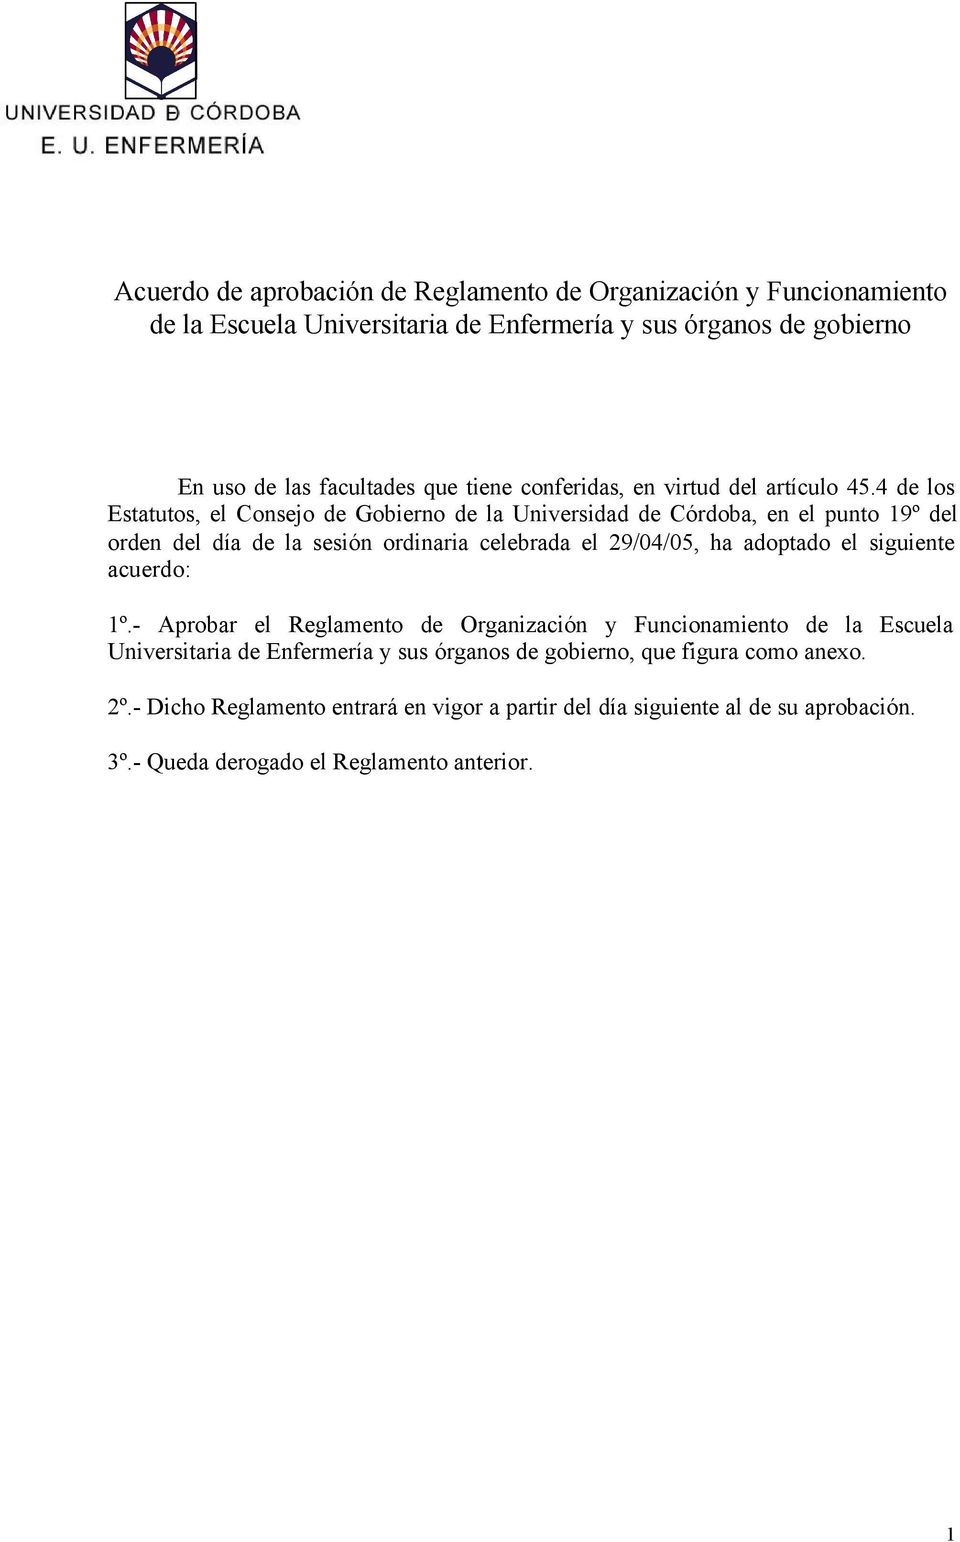 4 de los Estatutos, el Consejo de Gobierno de la Universidad de Córdoba, en el punto 19º del orden del día de la sesión ordinaria celebrada el 29/04/05, ha adoptado el